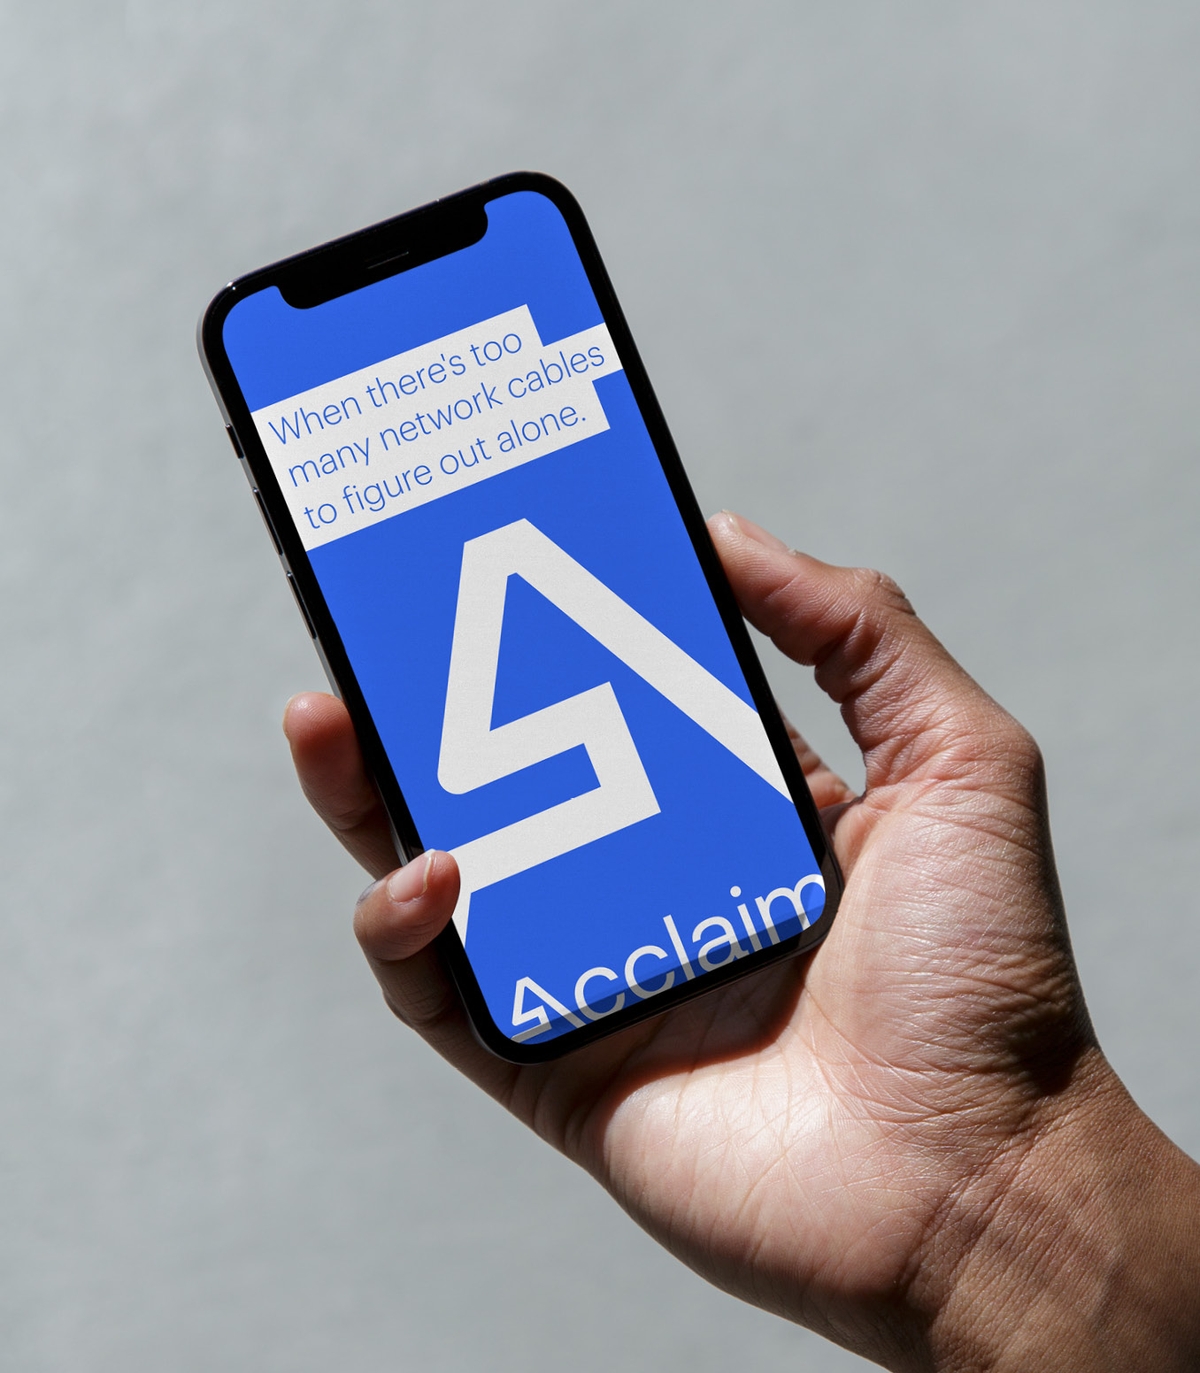 AccliamIT - Brand and Website - IT Solutions Mobile UX Design Mockup | Atollon - a design company